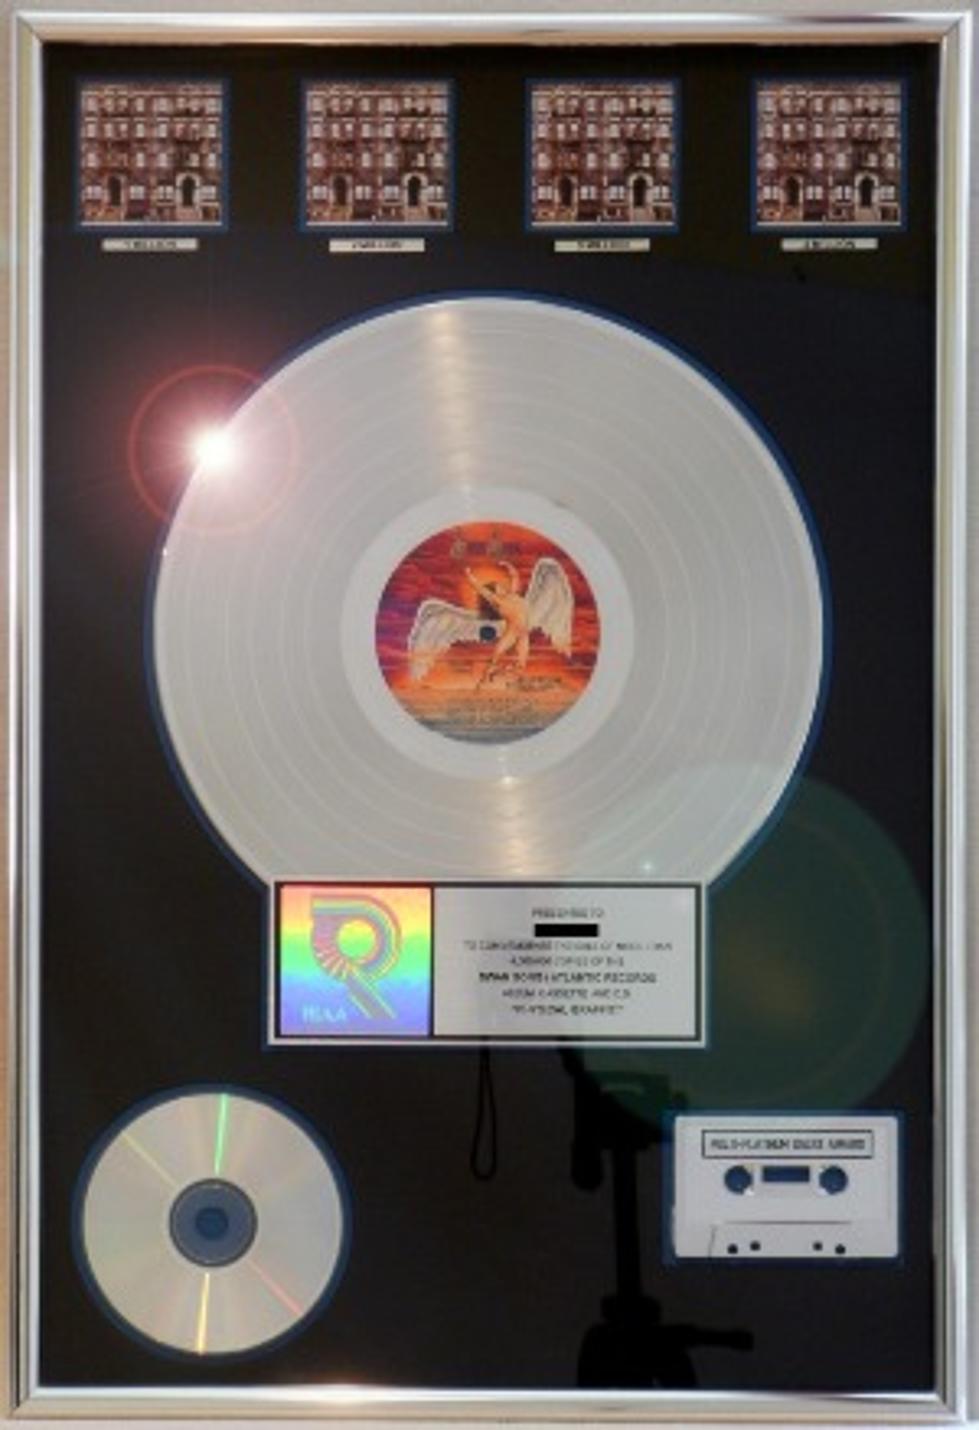 Led Zeppelin Platinum Album Sells For $2,000 on eBay